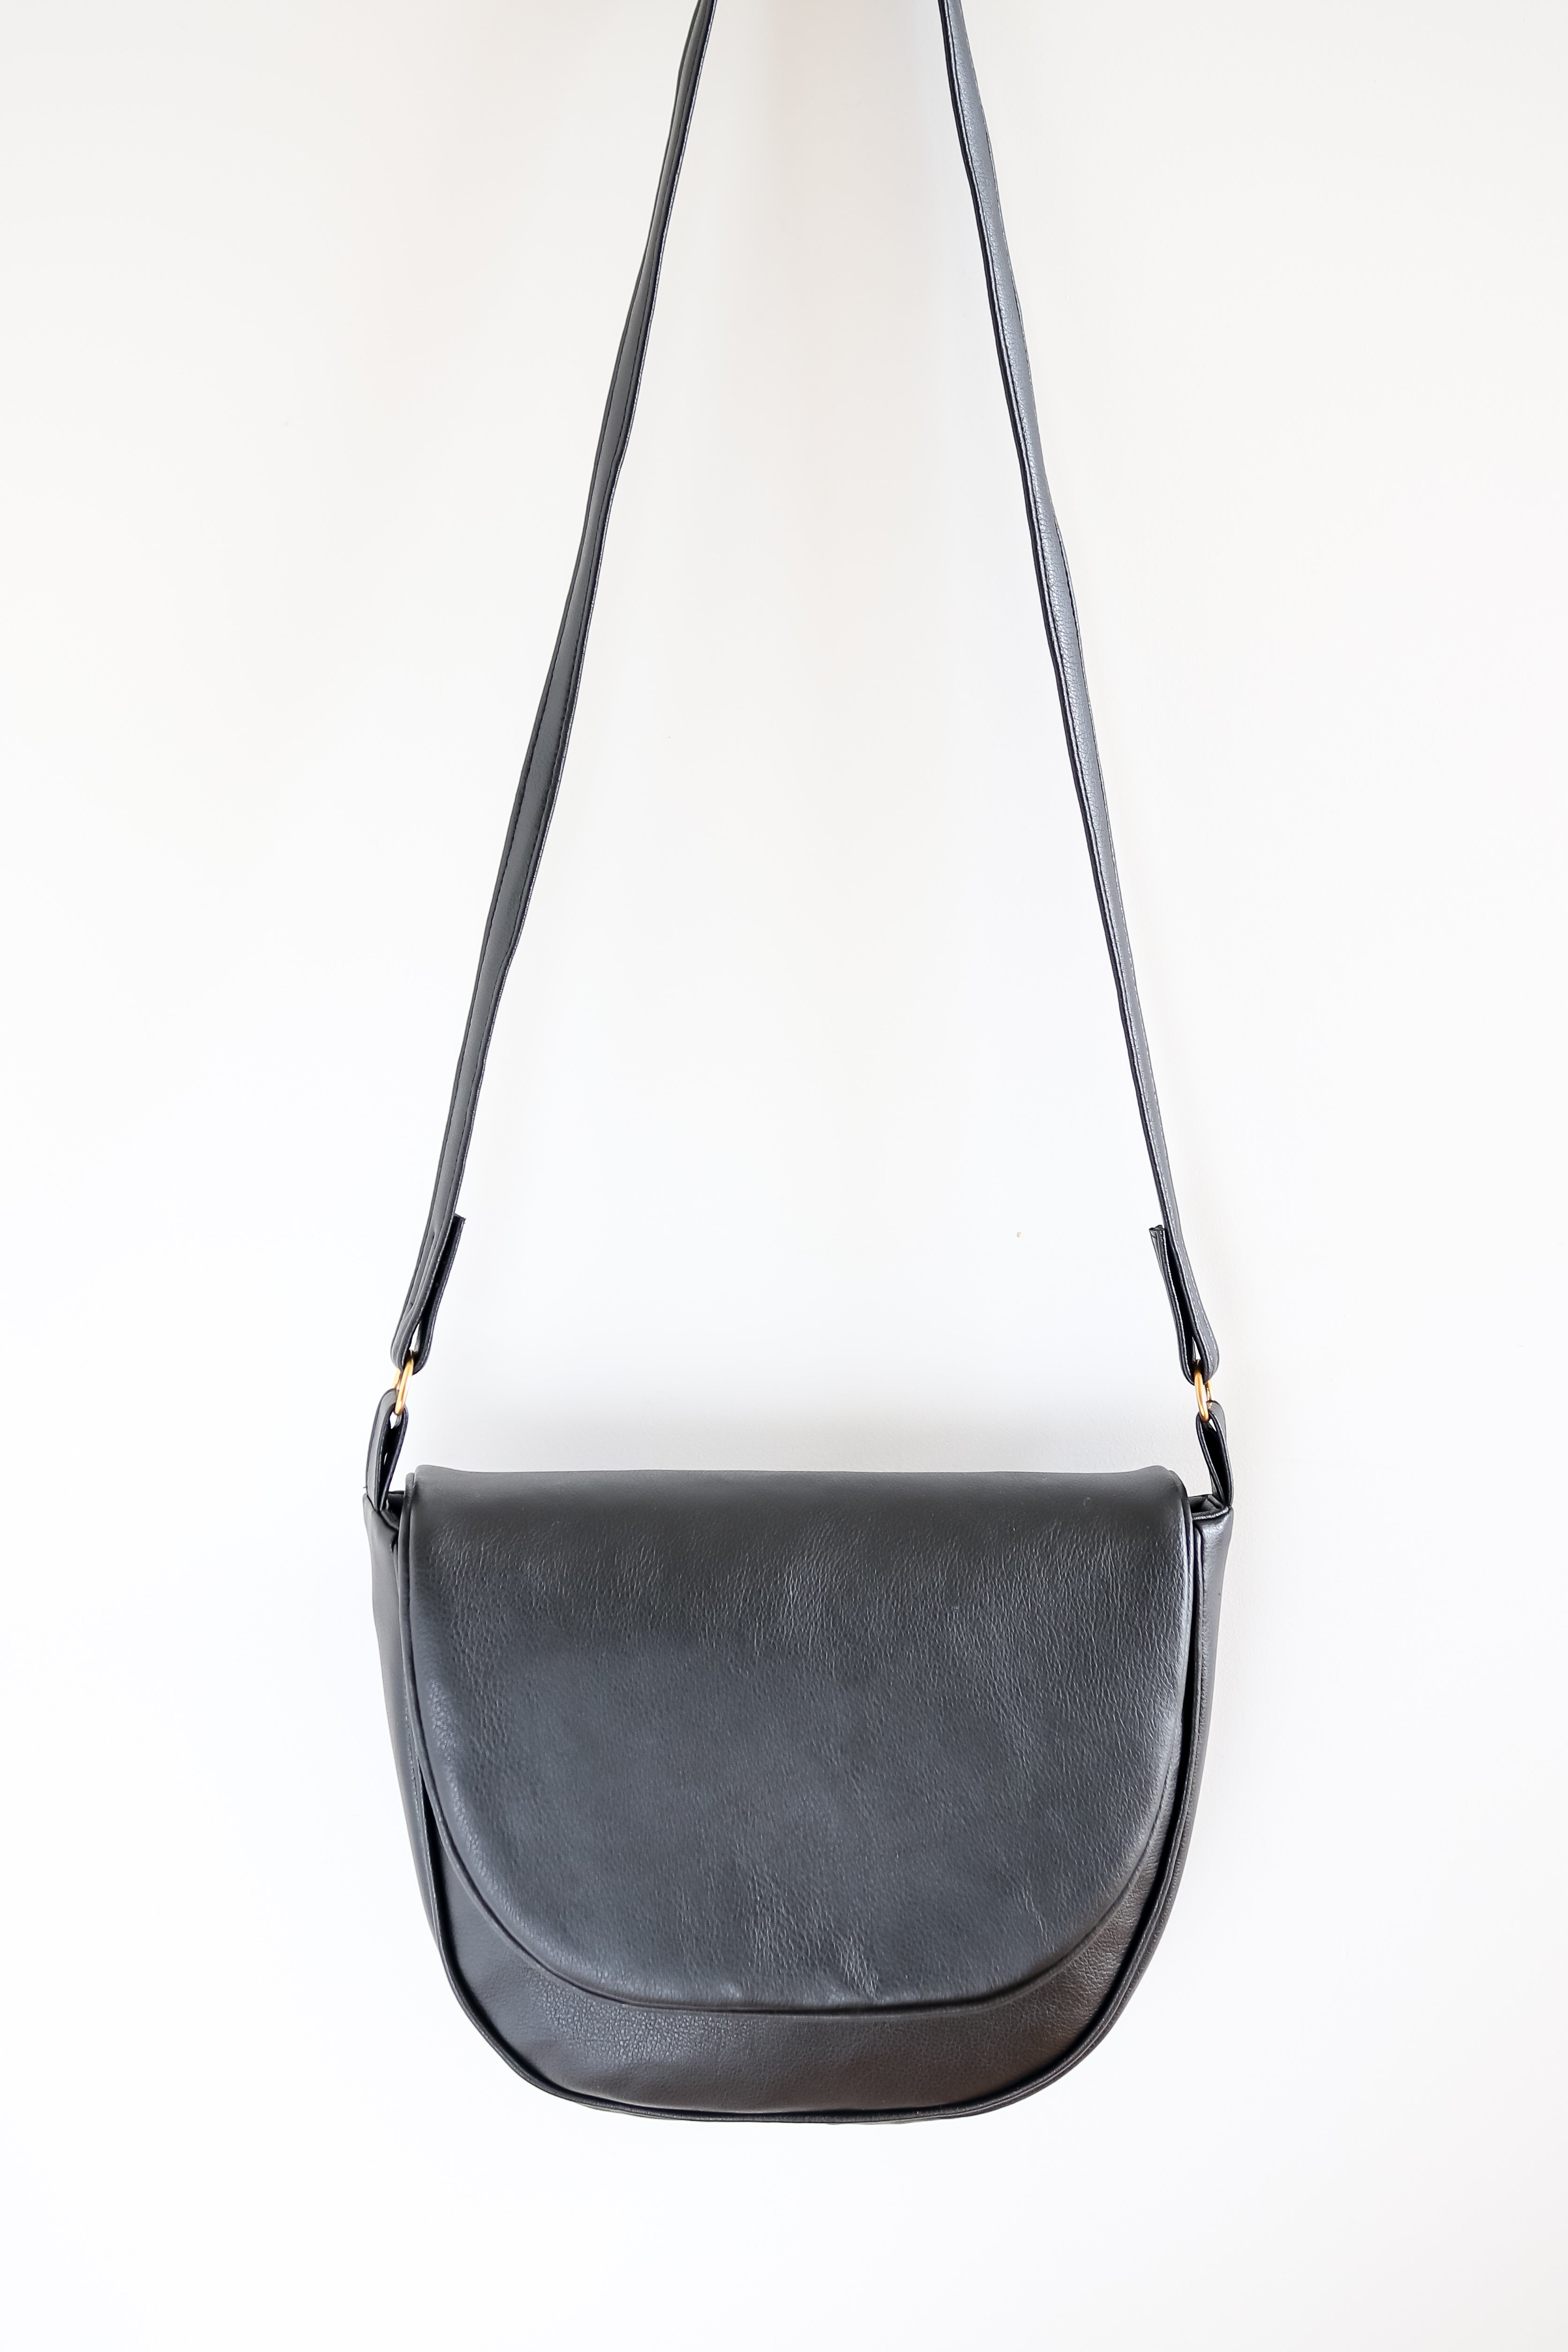 Alia - Cactus Leather Saddle Bag